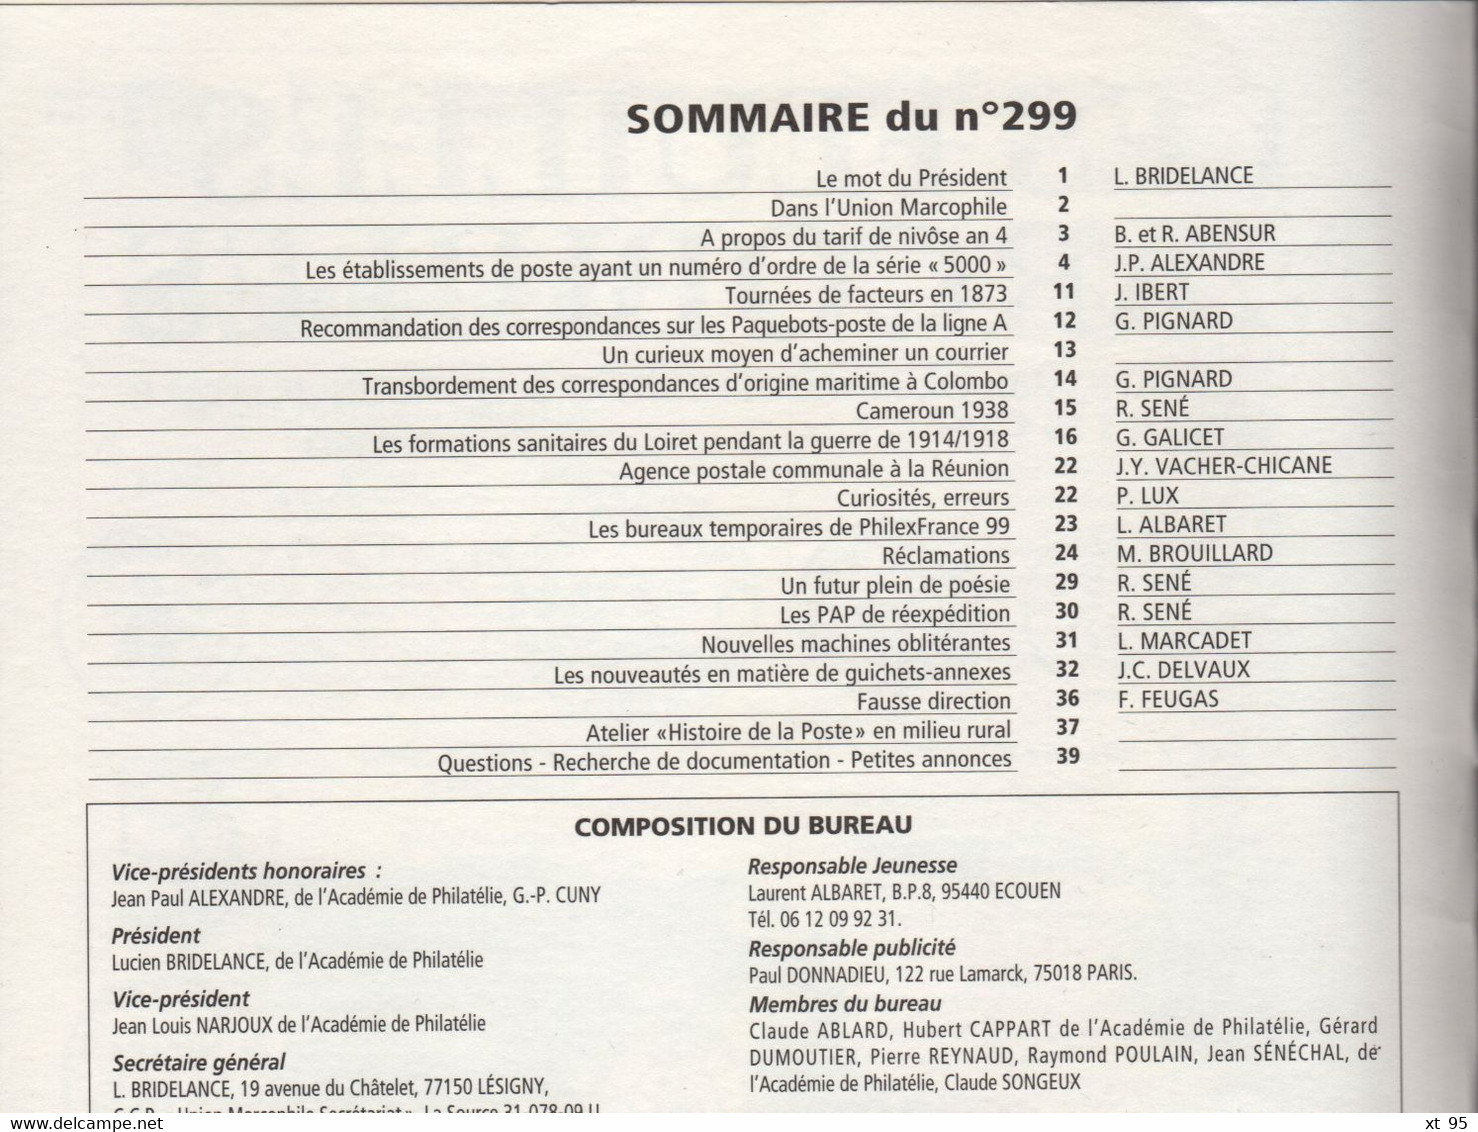 Les Feuilles Marcophiles - N°299 - Voir Sommaire - Frais De Port 2€ - Filatelie En Postgeschiedenis